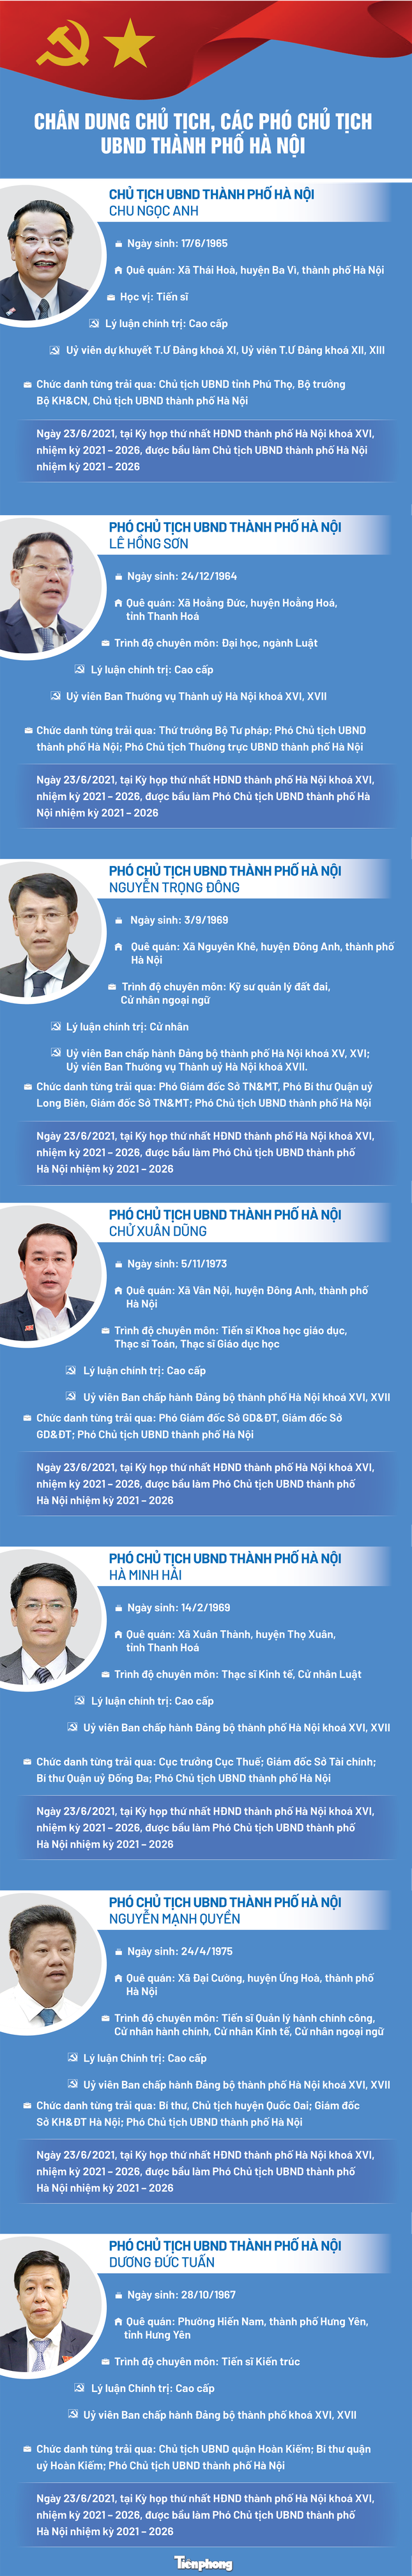 Hà Nội có 6 Phó Chủ tịch UBND thành phố ảnh 1